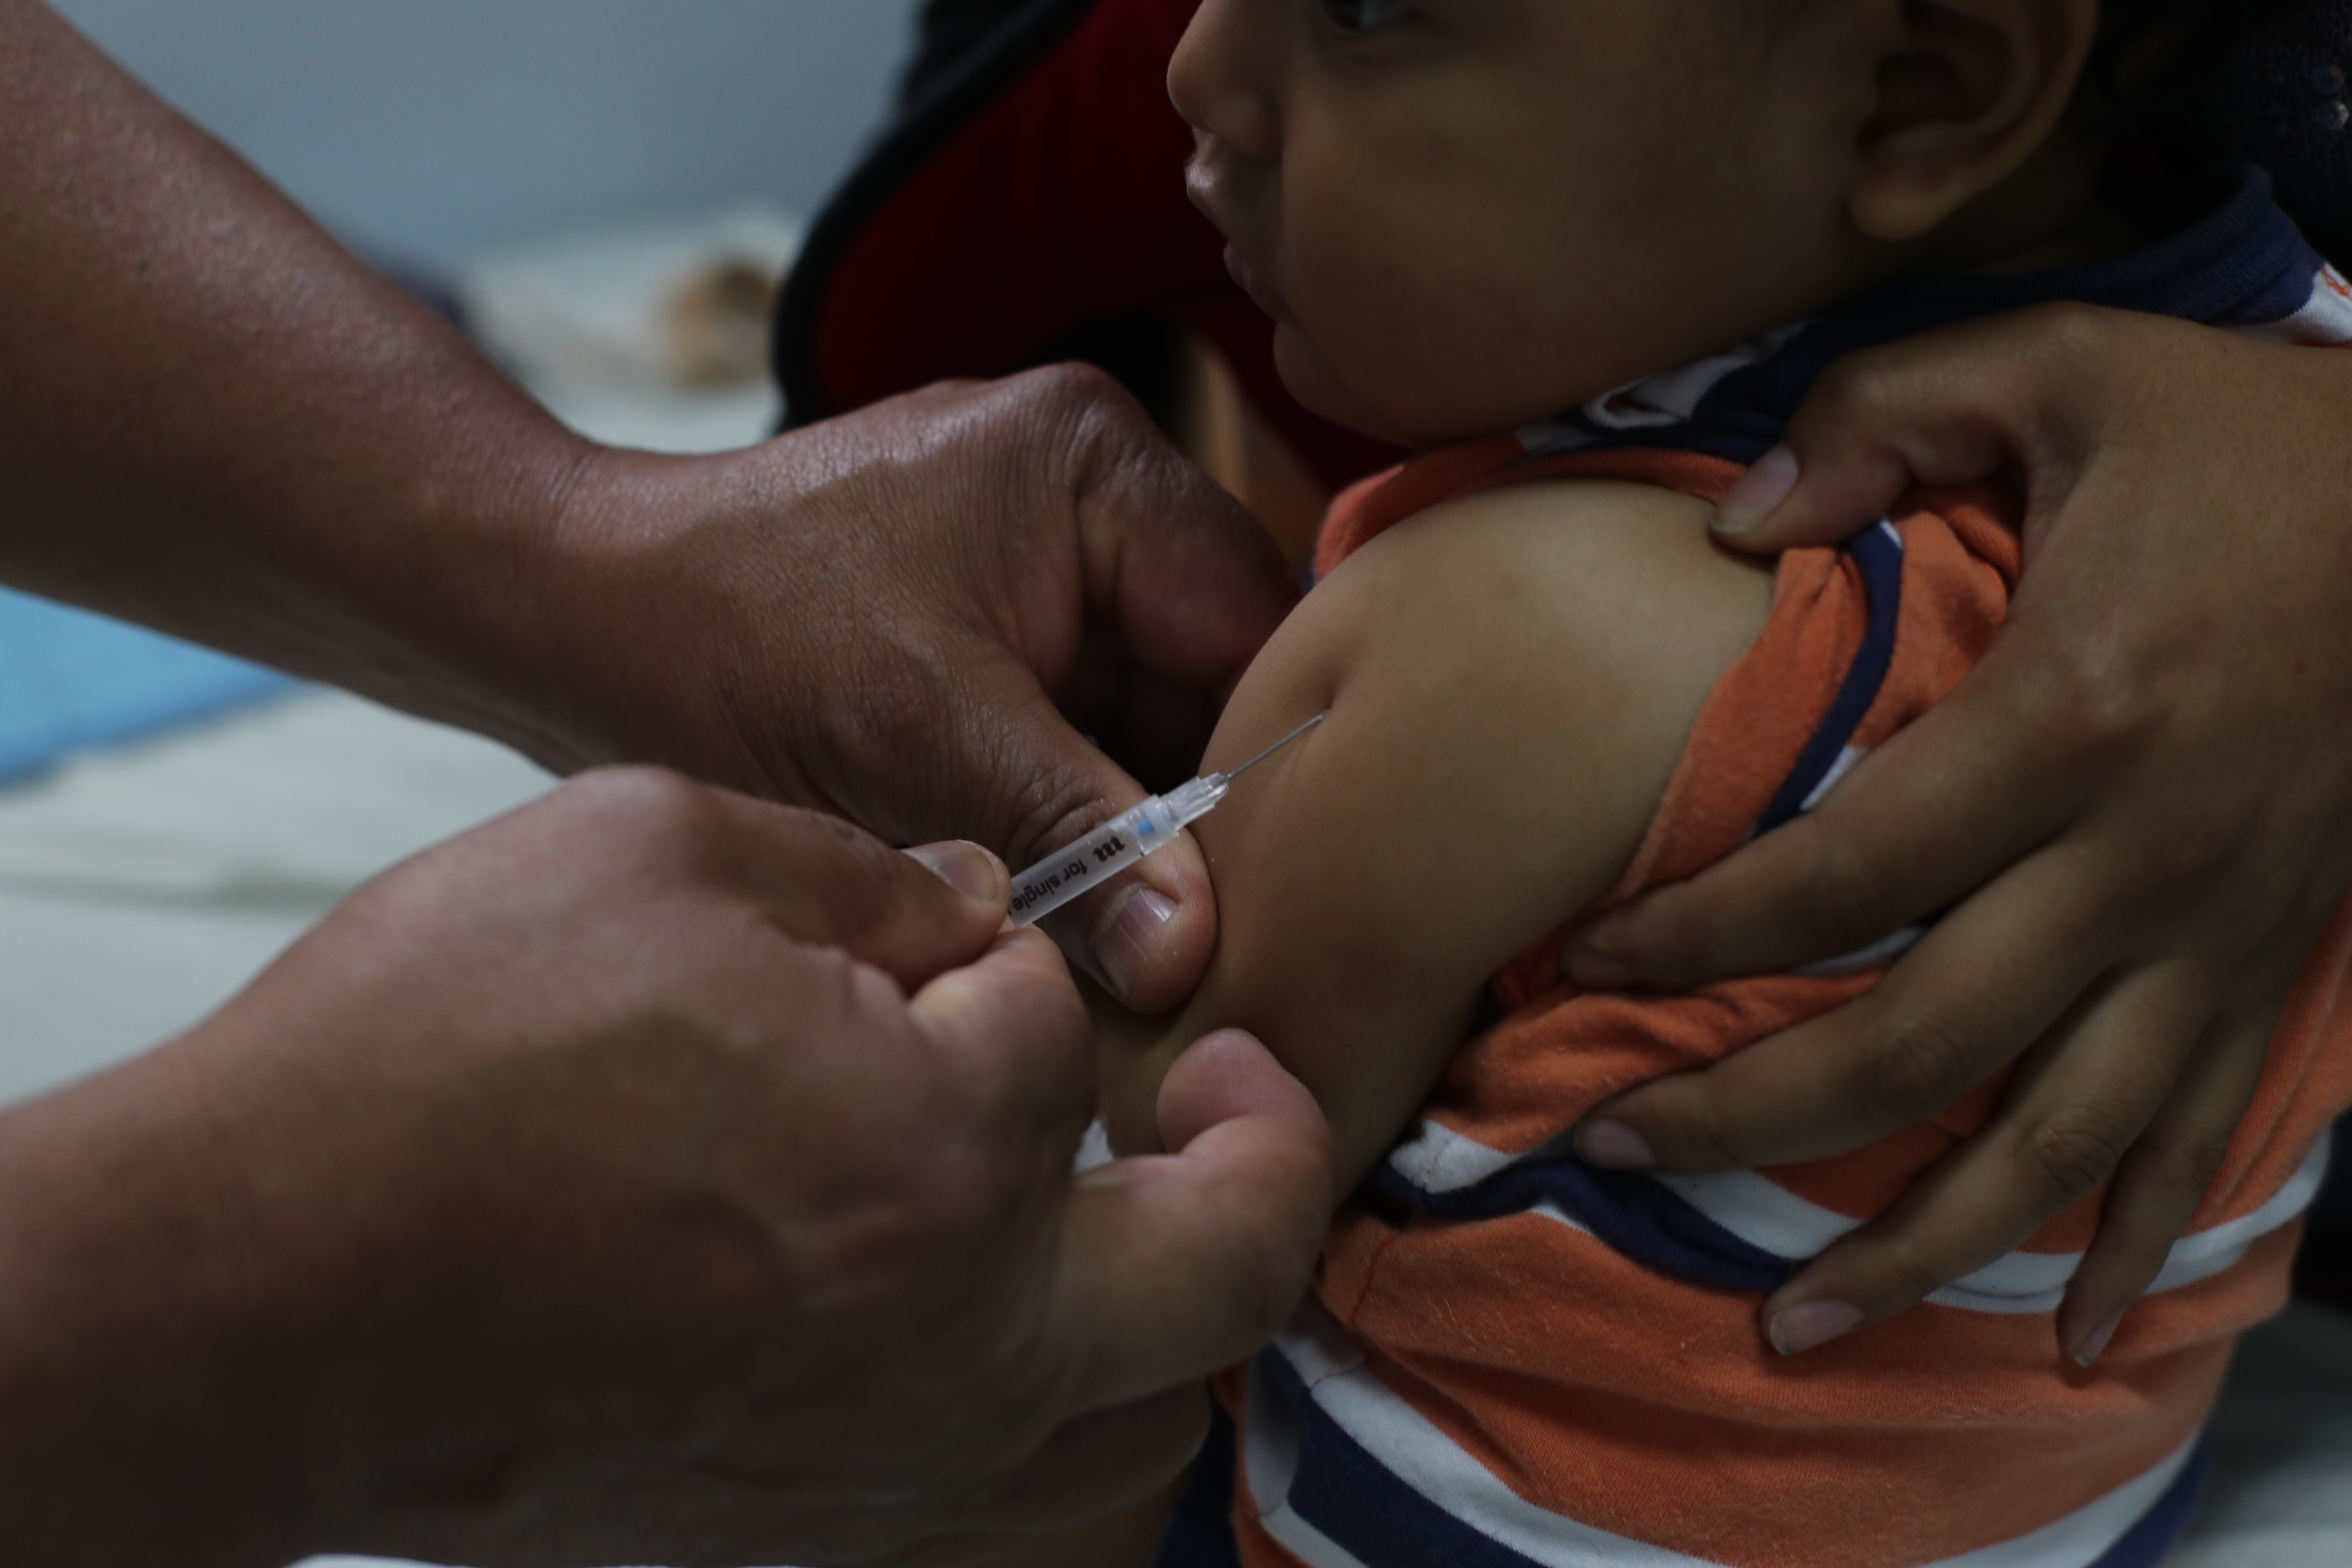 La imunización de los niños niños contra el sarampión debe hacerse a los 12 y 18 meses. (Foto Prensa Libre: Érick Ávila)